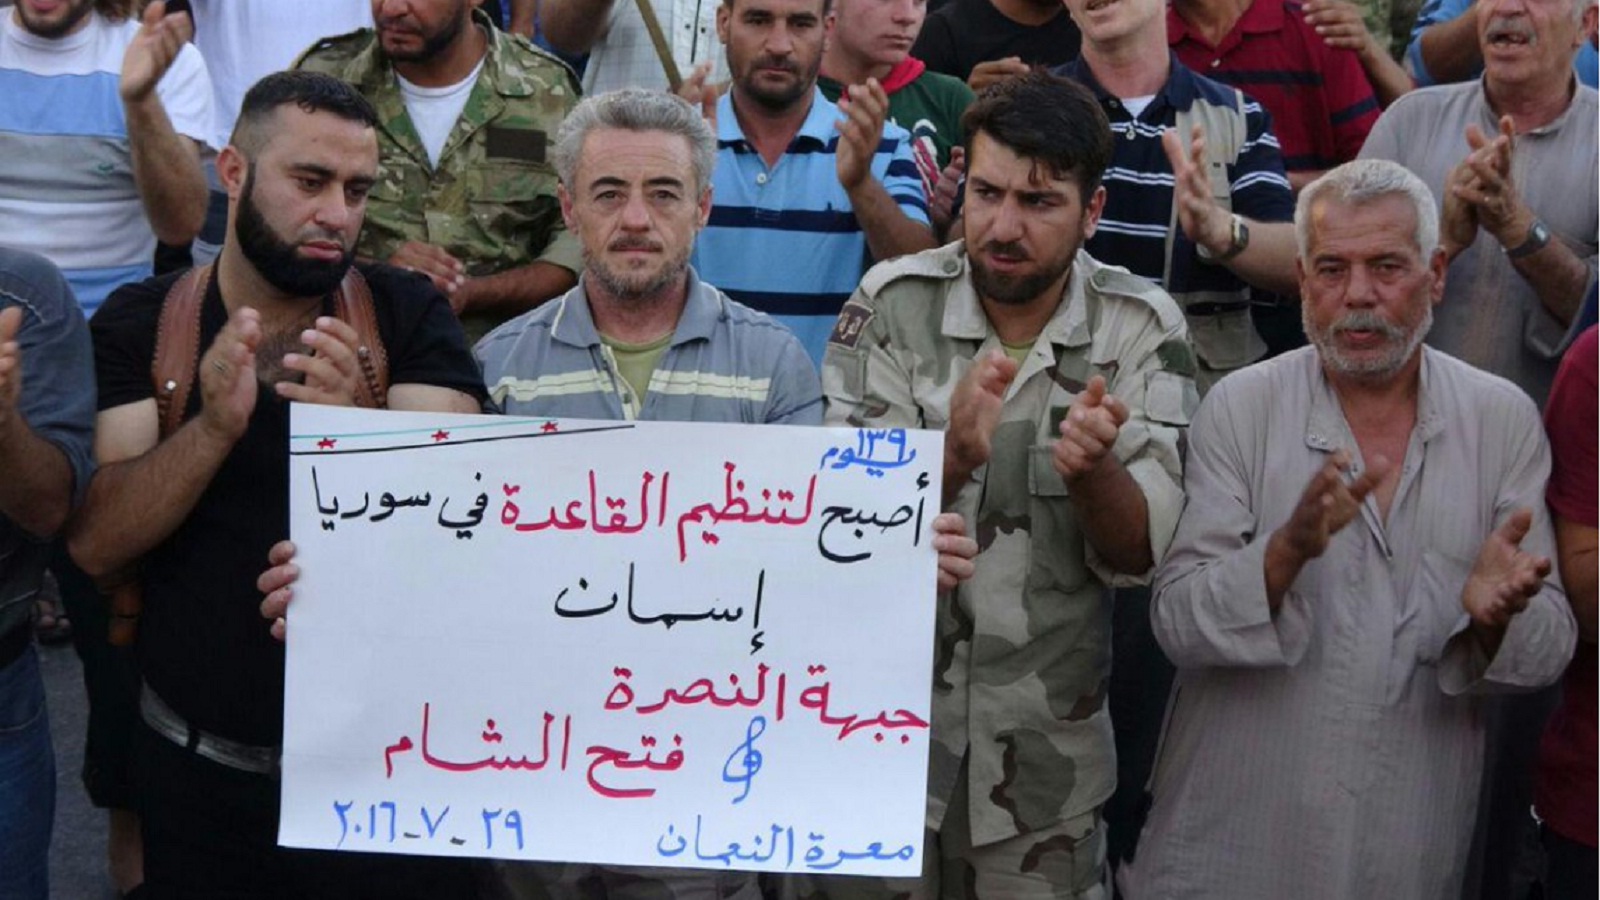 سوريون يتصدون لتطرف "القاعدة" في إدلب